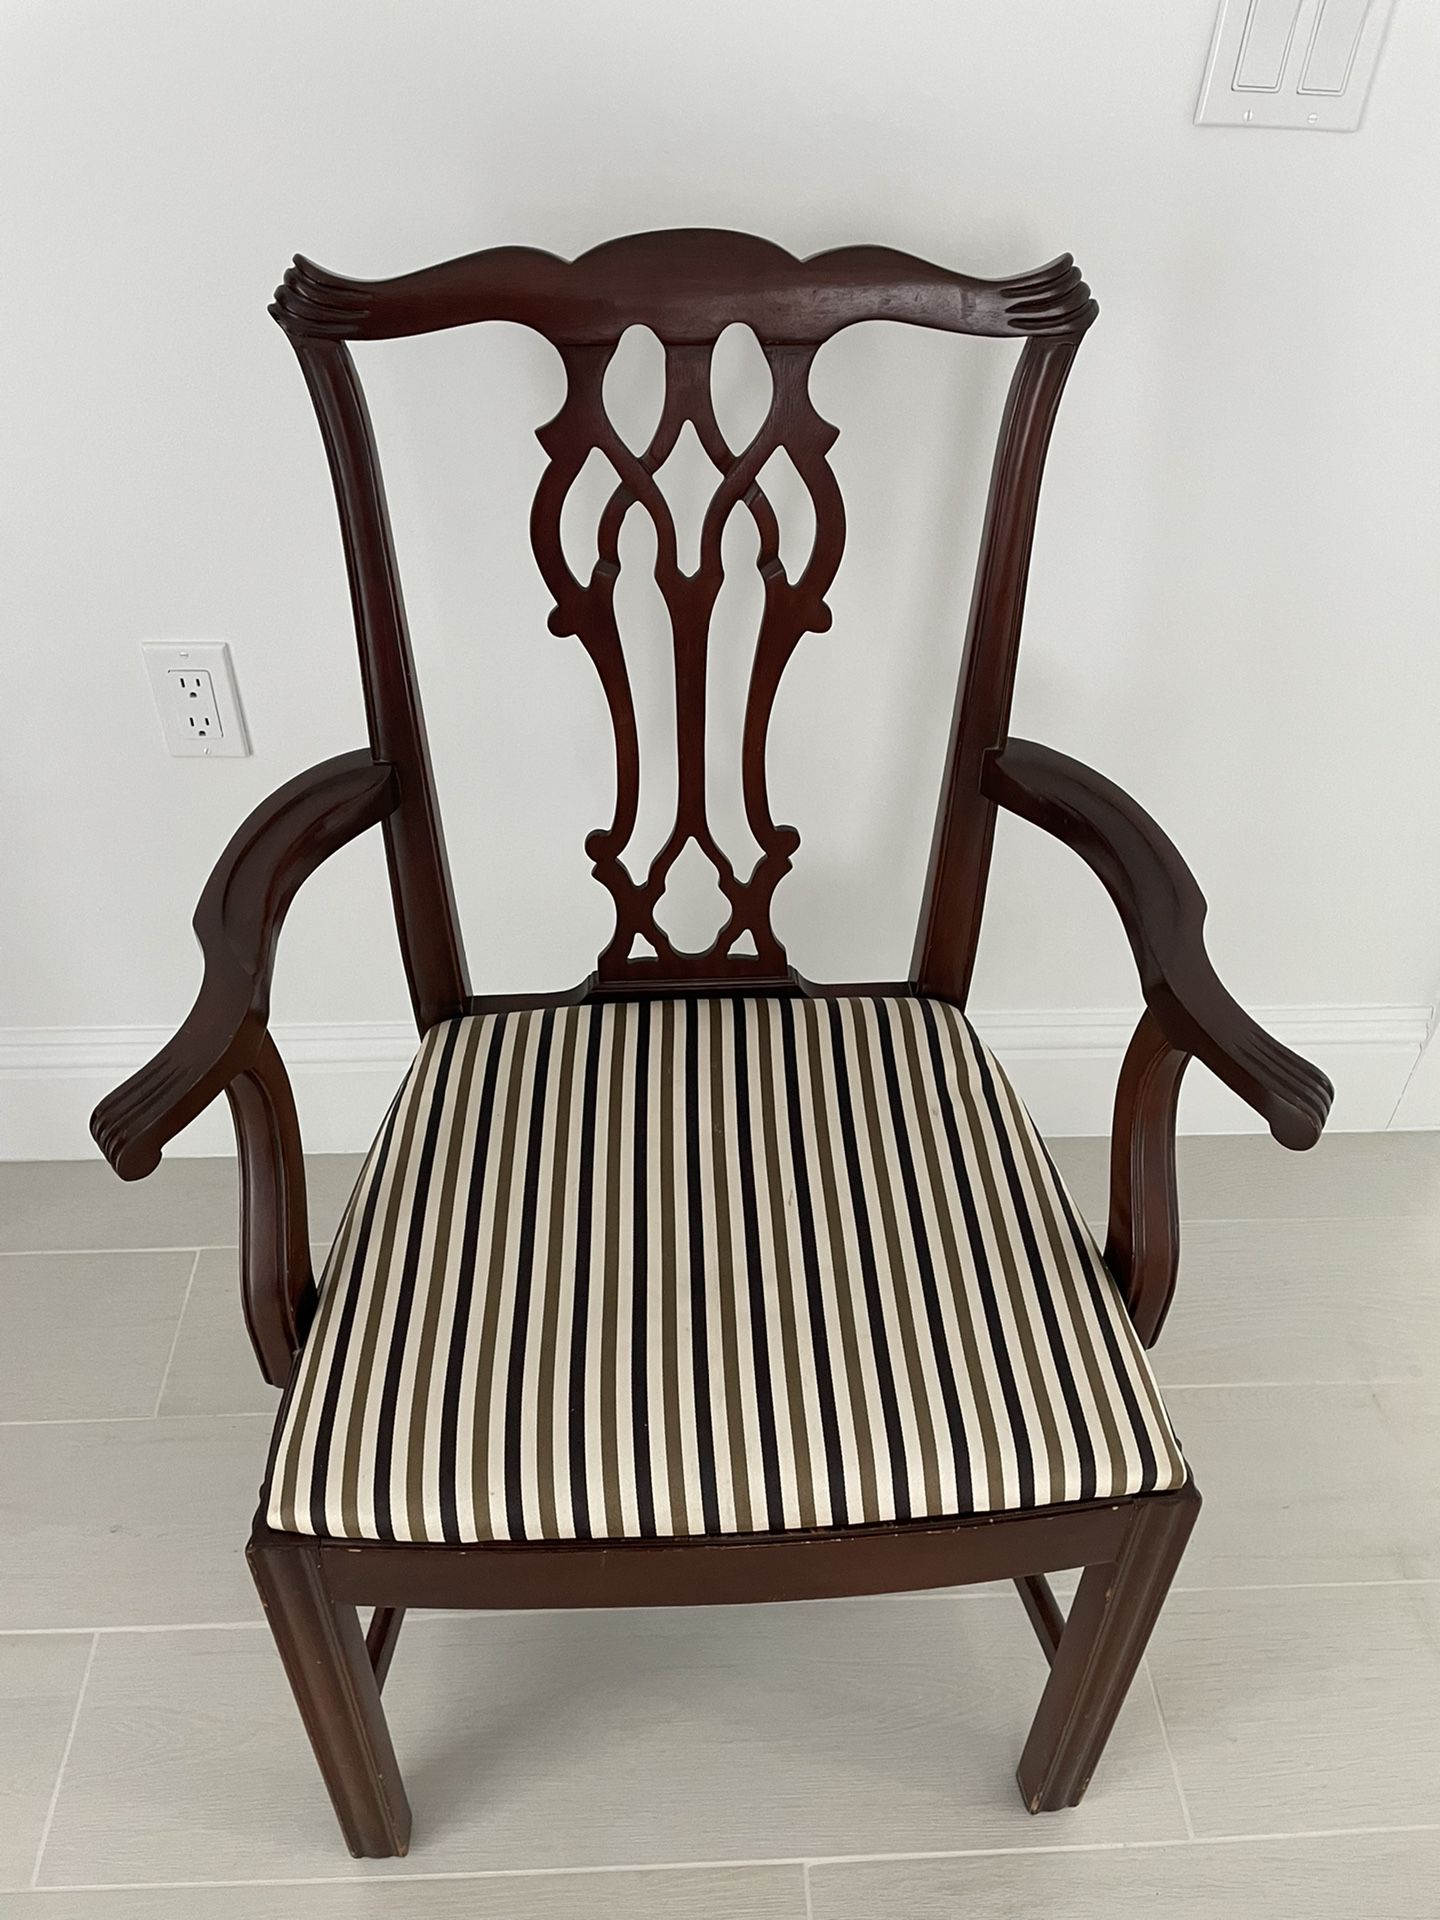 Mahogany Chair Reupholstered Nice